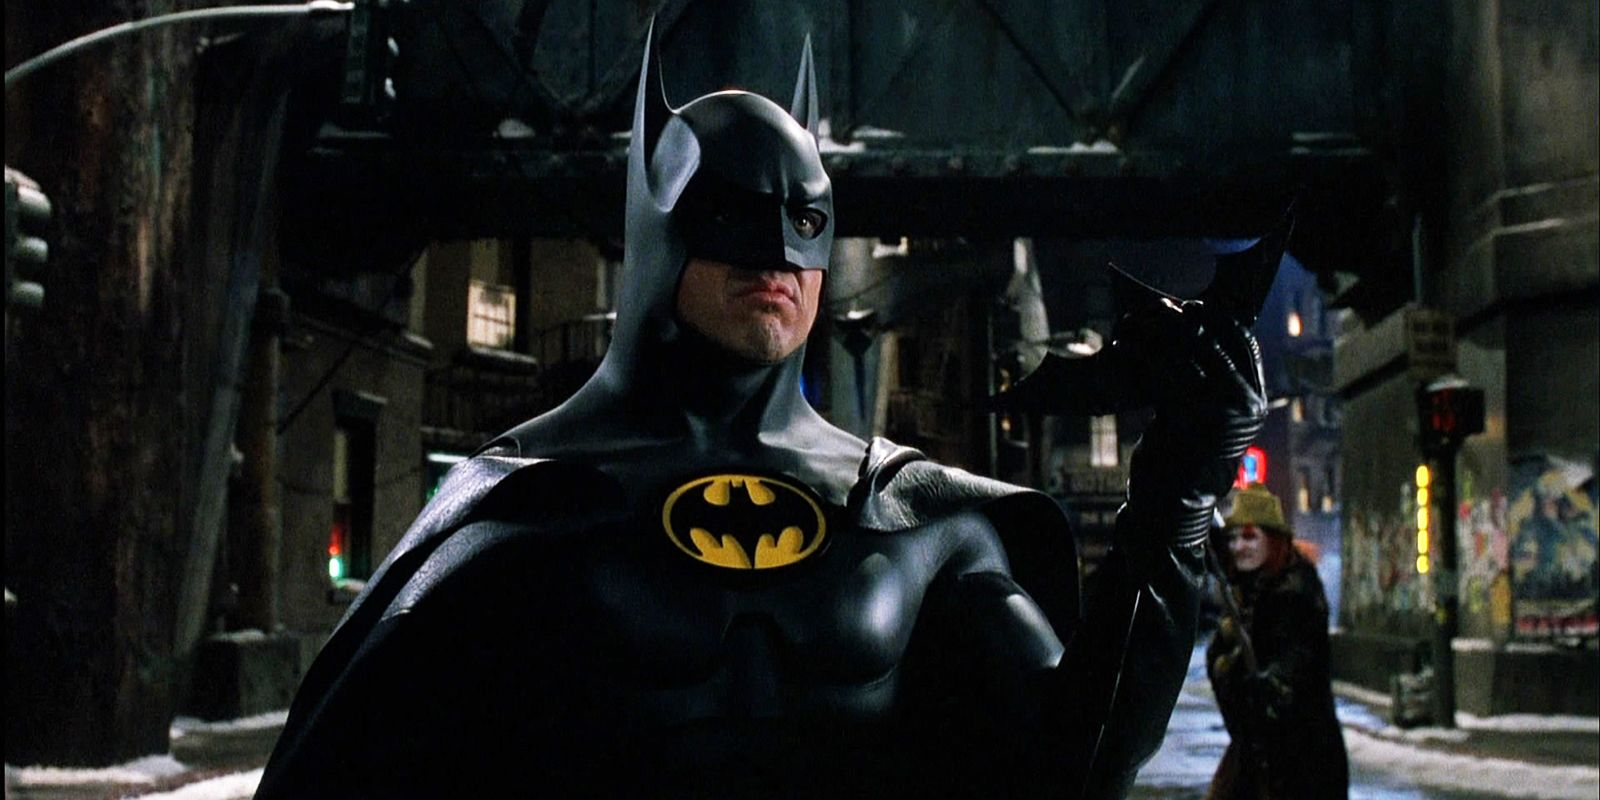 Michael Keaton in the Batsuit in Batman Returns